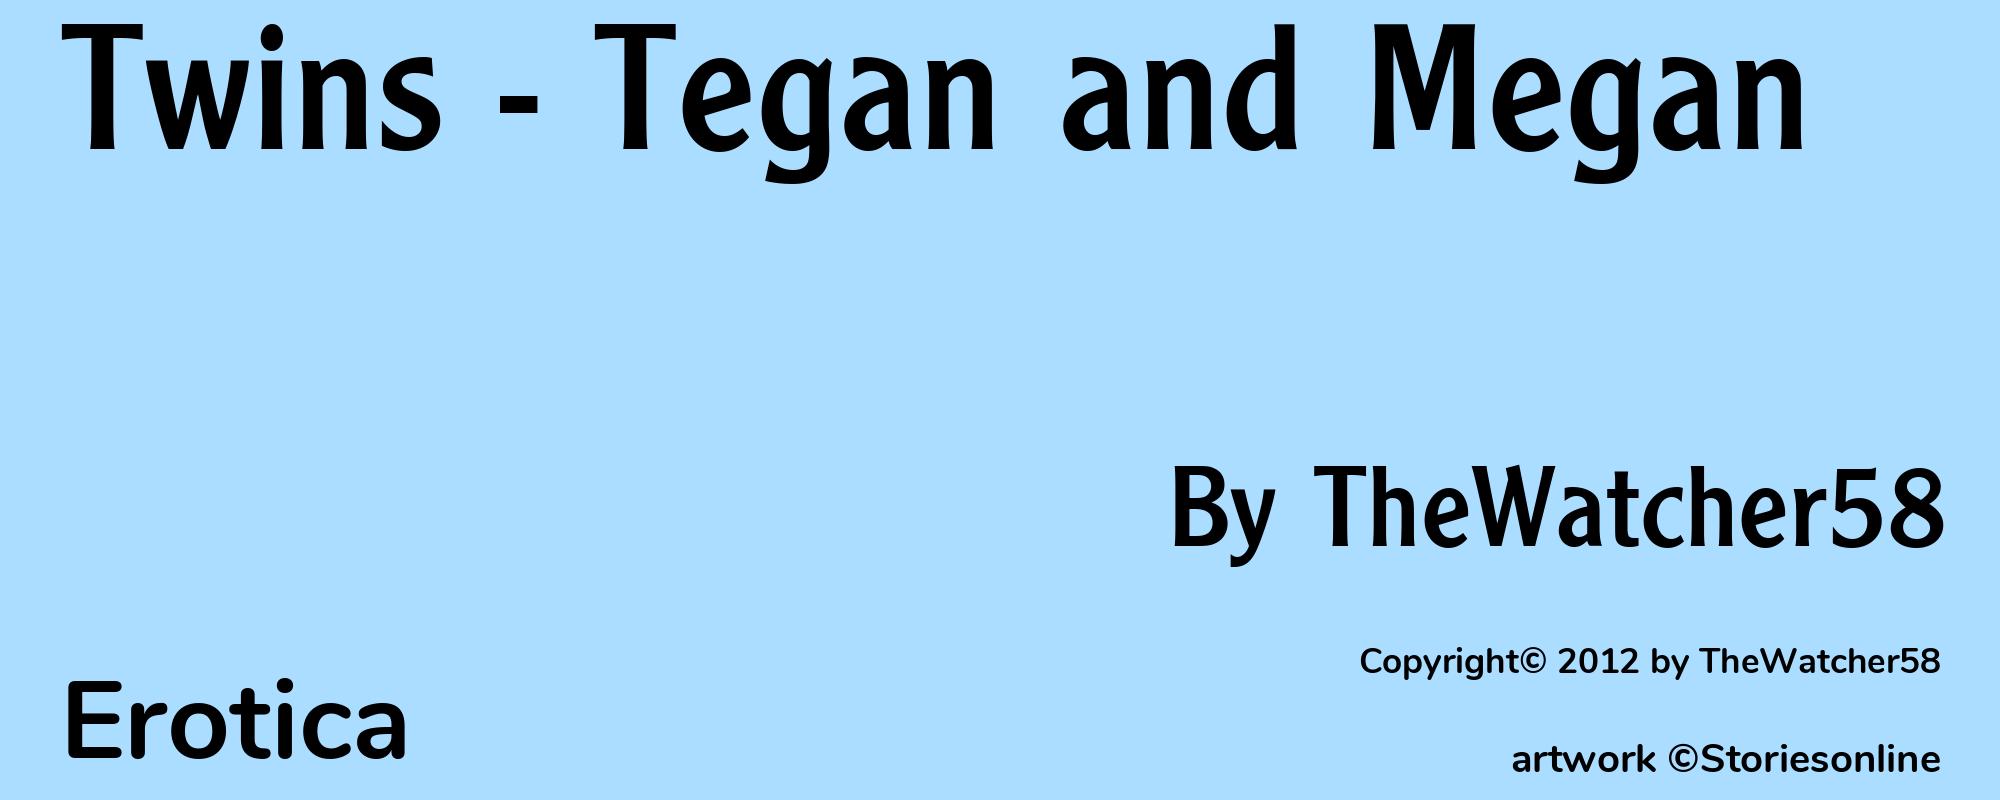 Twins - Tegan and Megan - Cover